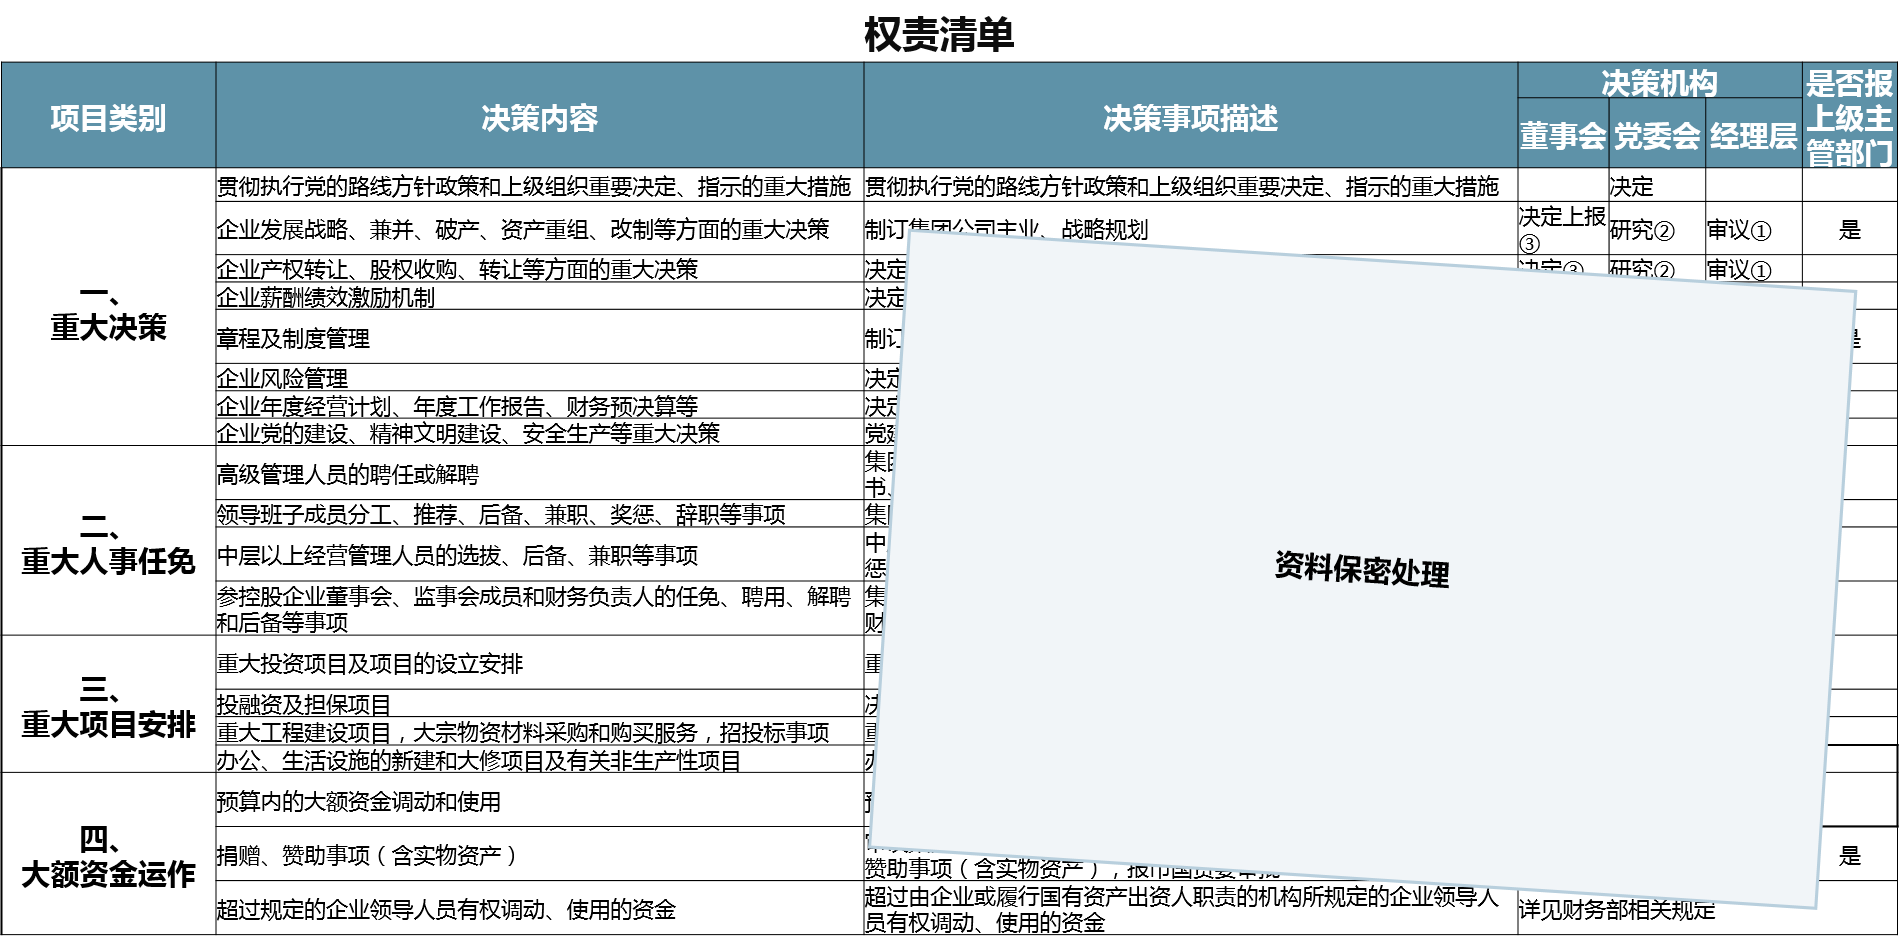 广州市某国企依据公司章程及“三重一大”制度，设计权责清单